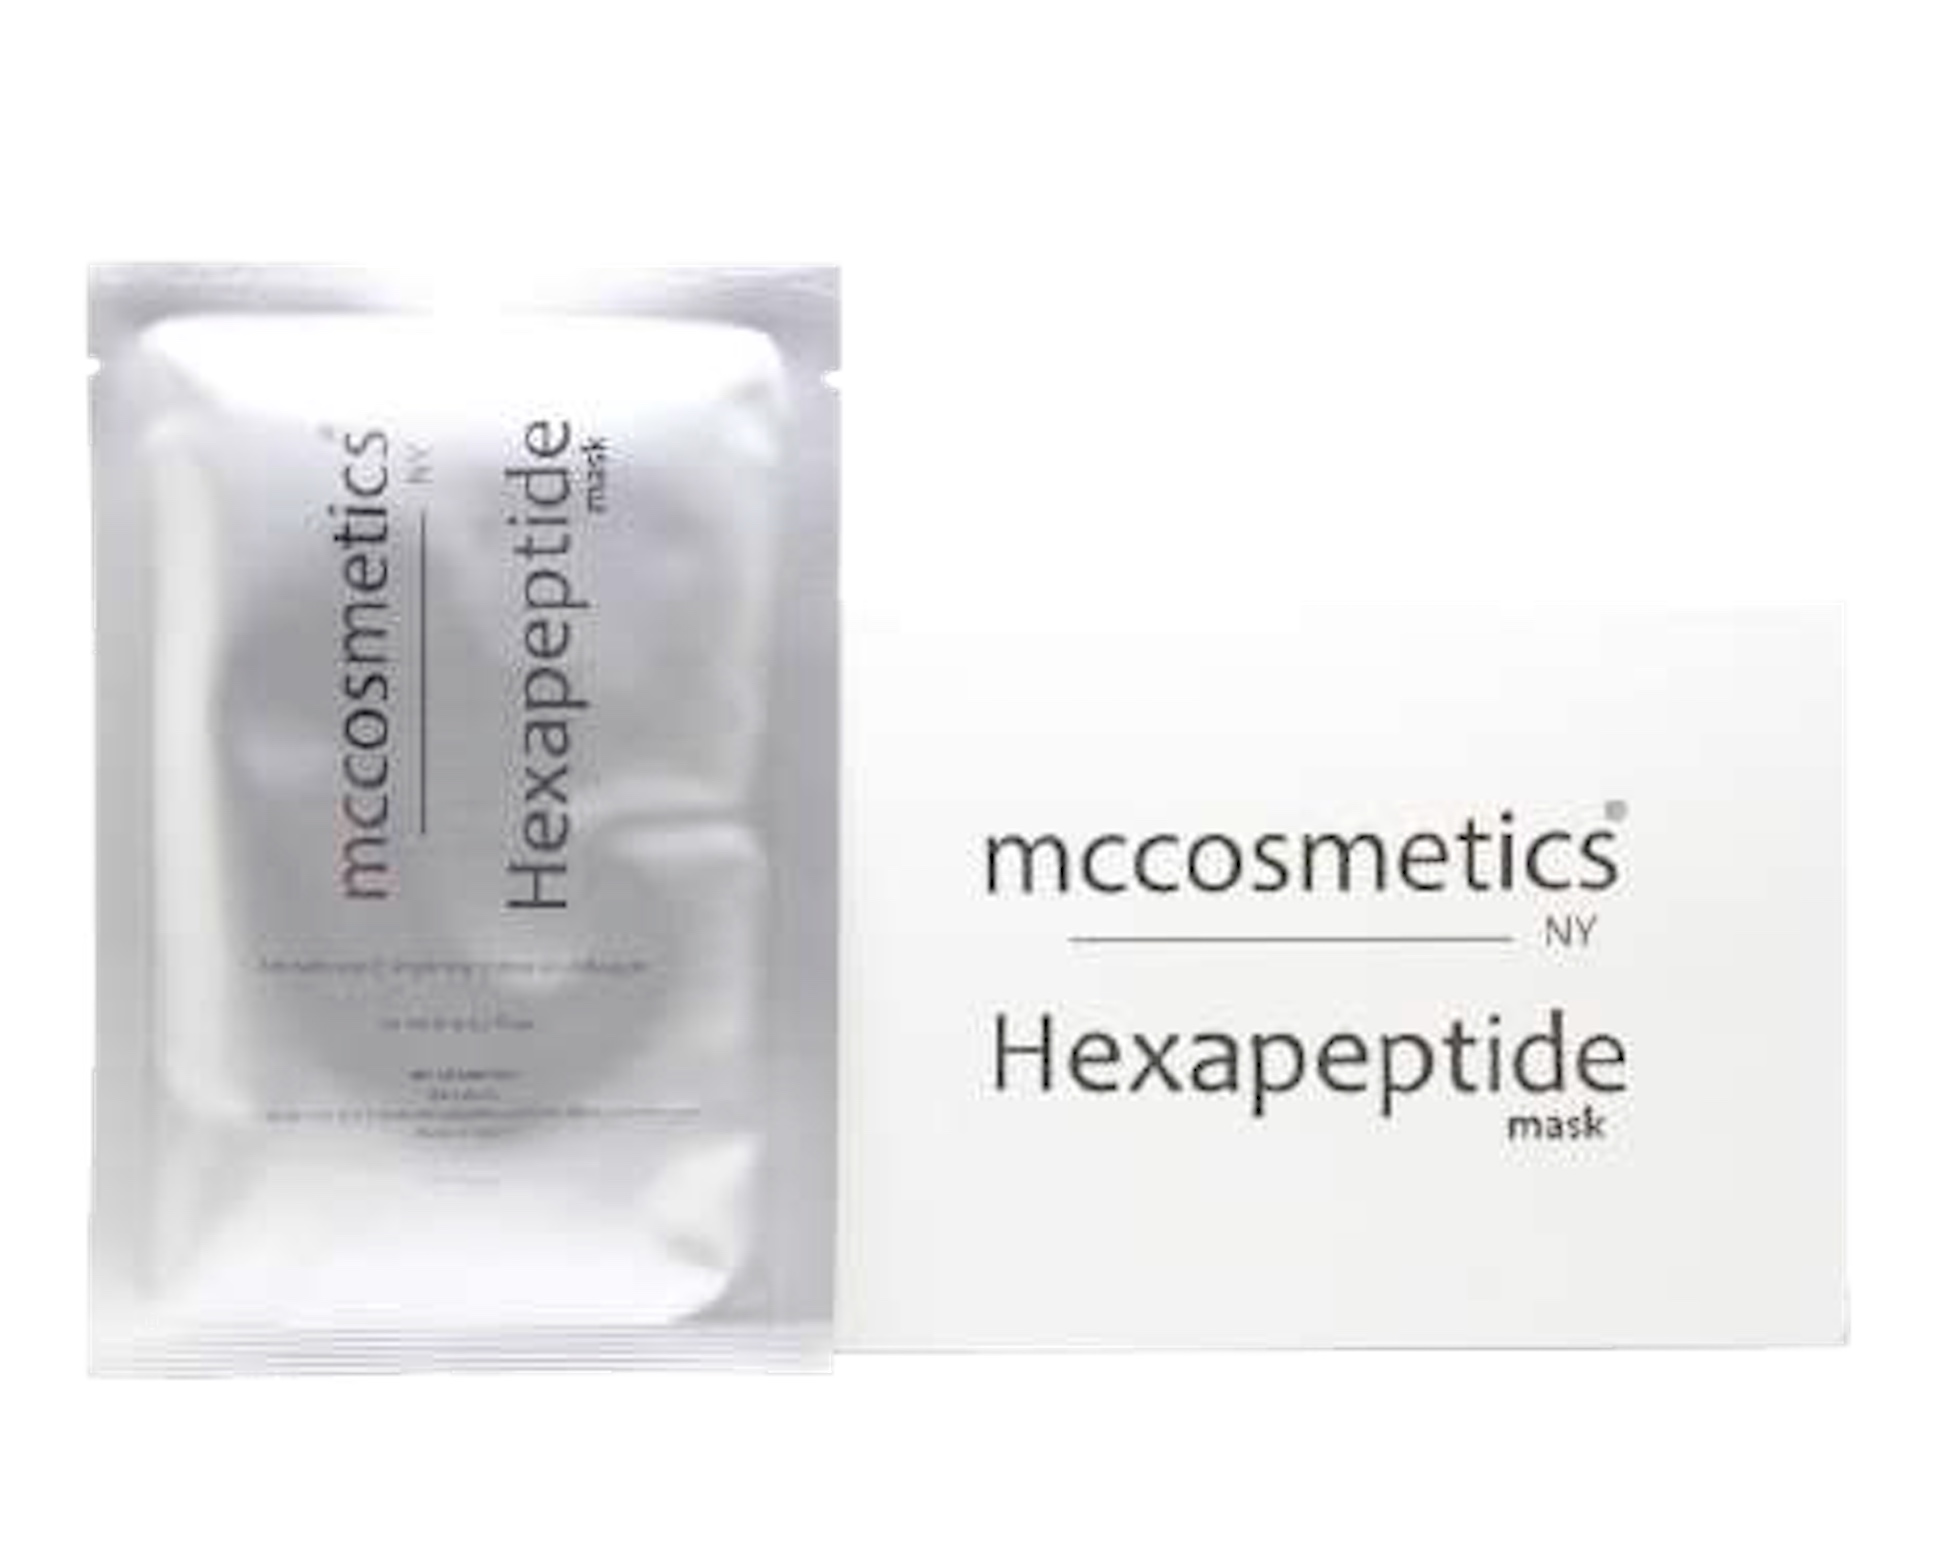 Hexapeptide Gesichtsmaske - Vliesmaske - Tuchmaske von mccosmetics auf www.beauty.camp